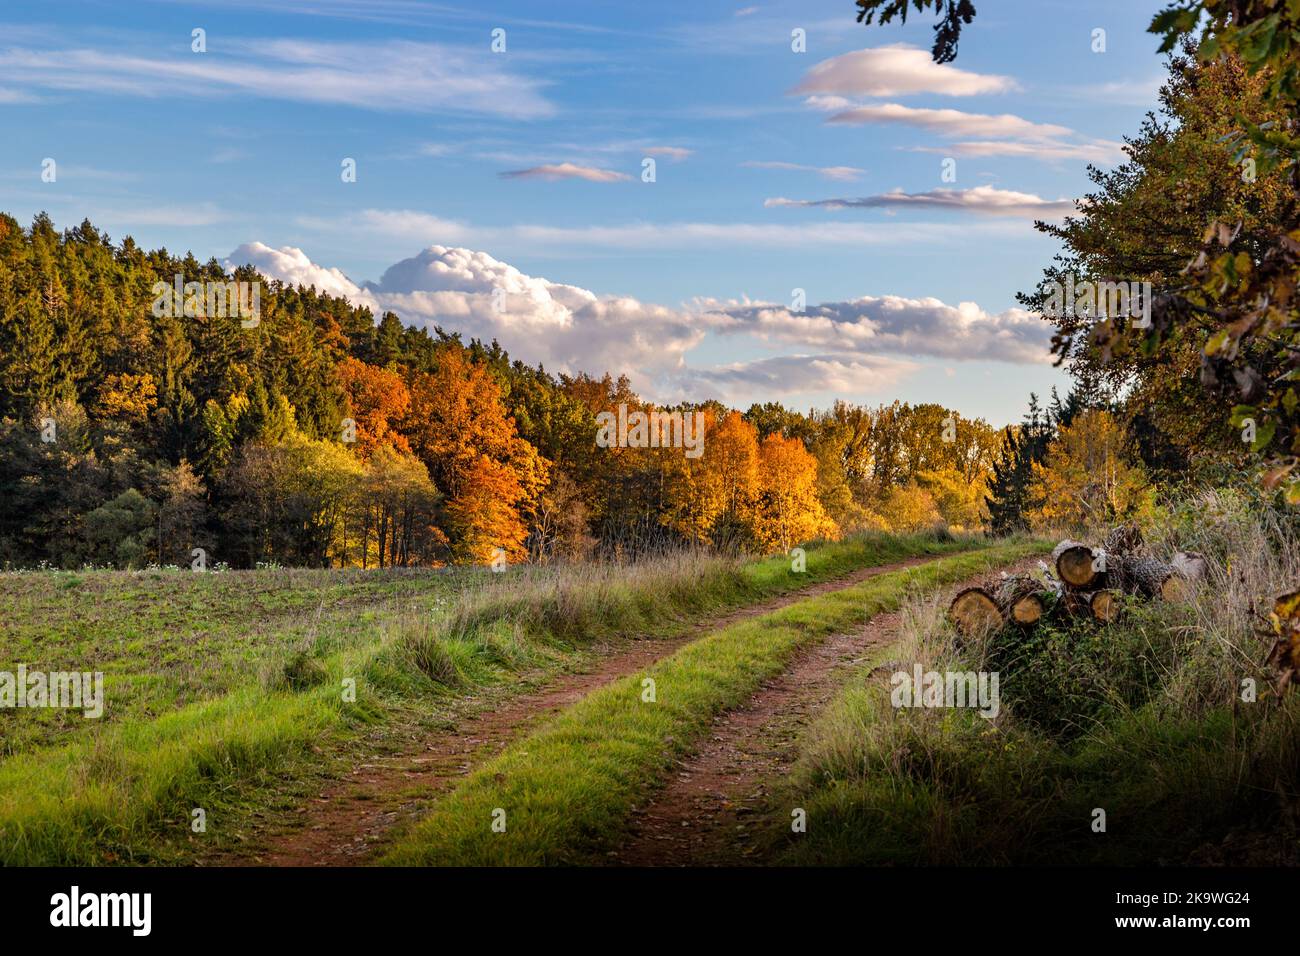 Soirée d'automne ensoleillée sur la prairie. Paysage rural pittoresque. Banque D'Images